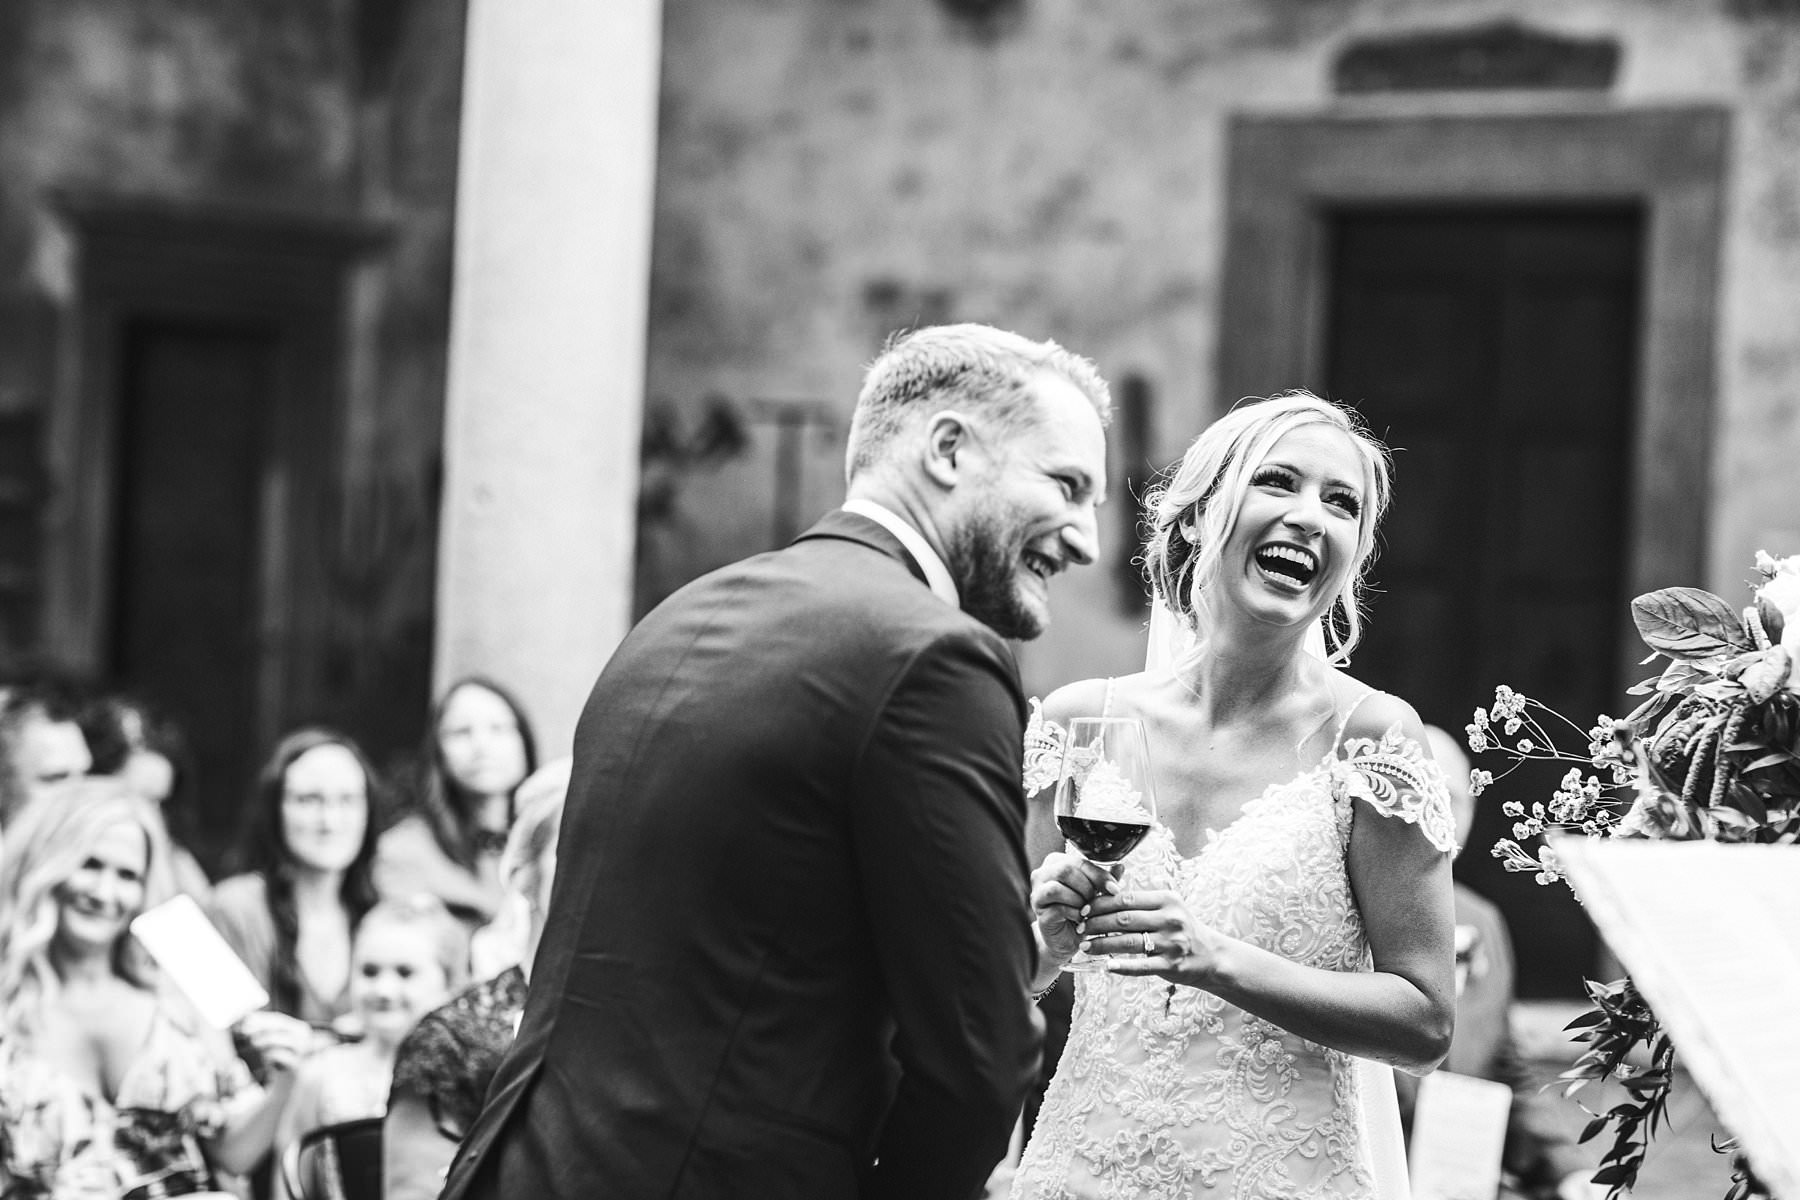 Romantic wedding in Italy at the charming Castello del Trebbio